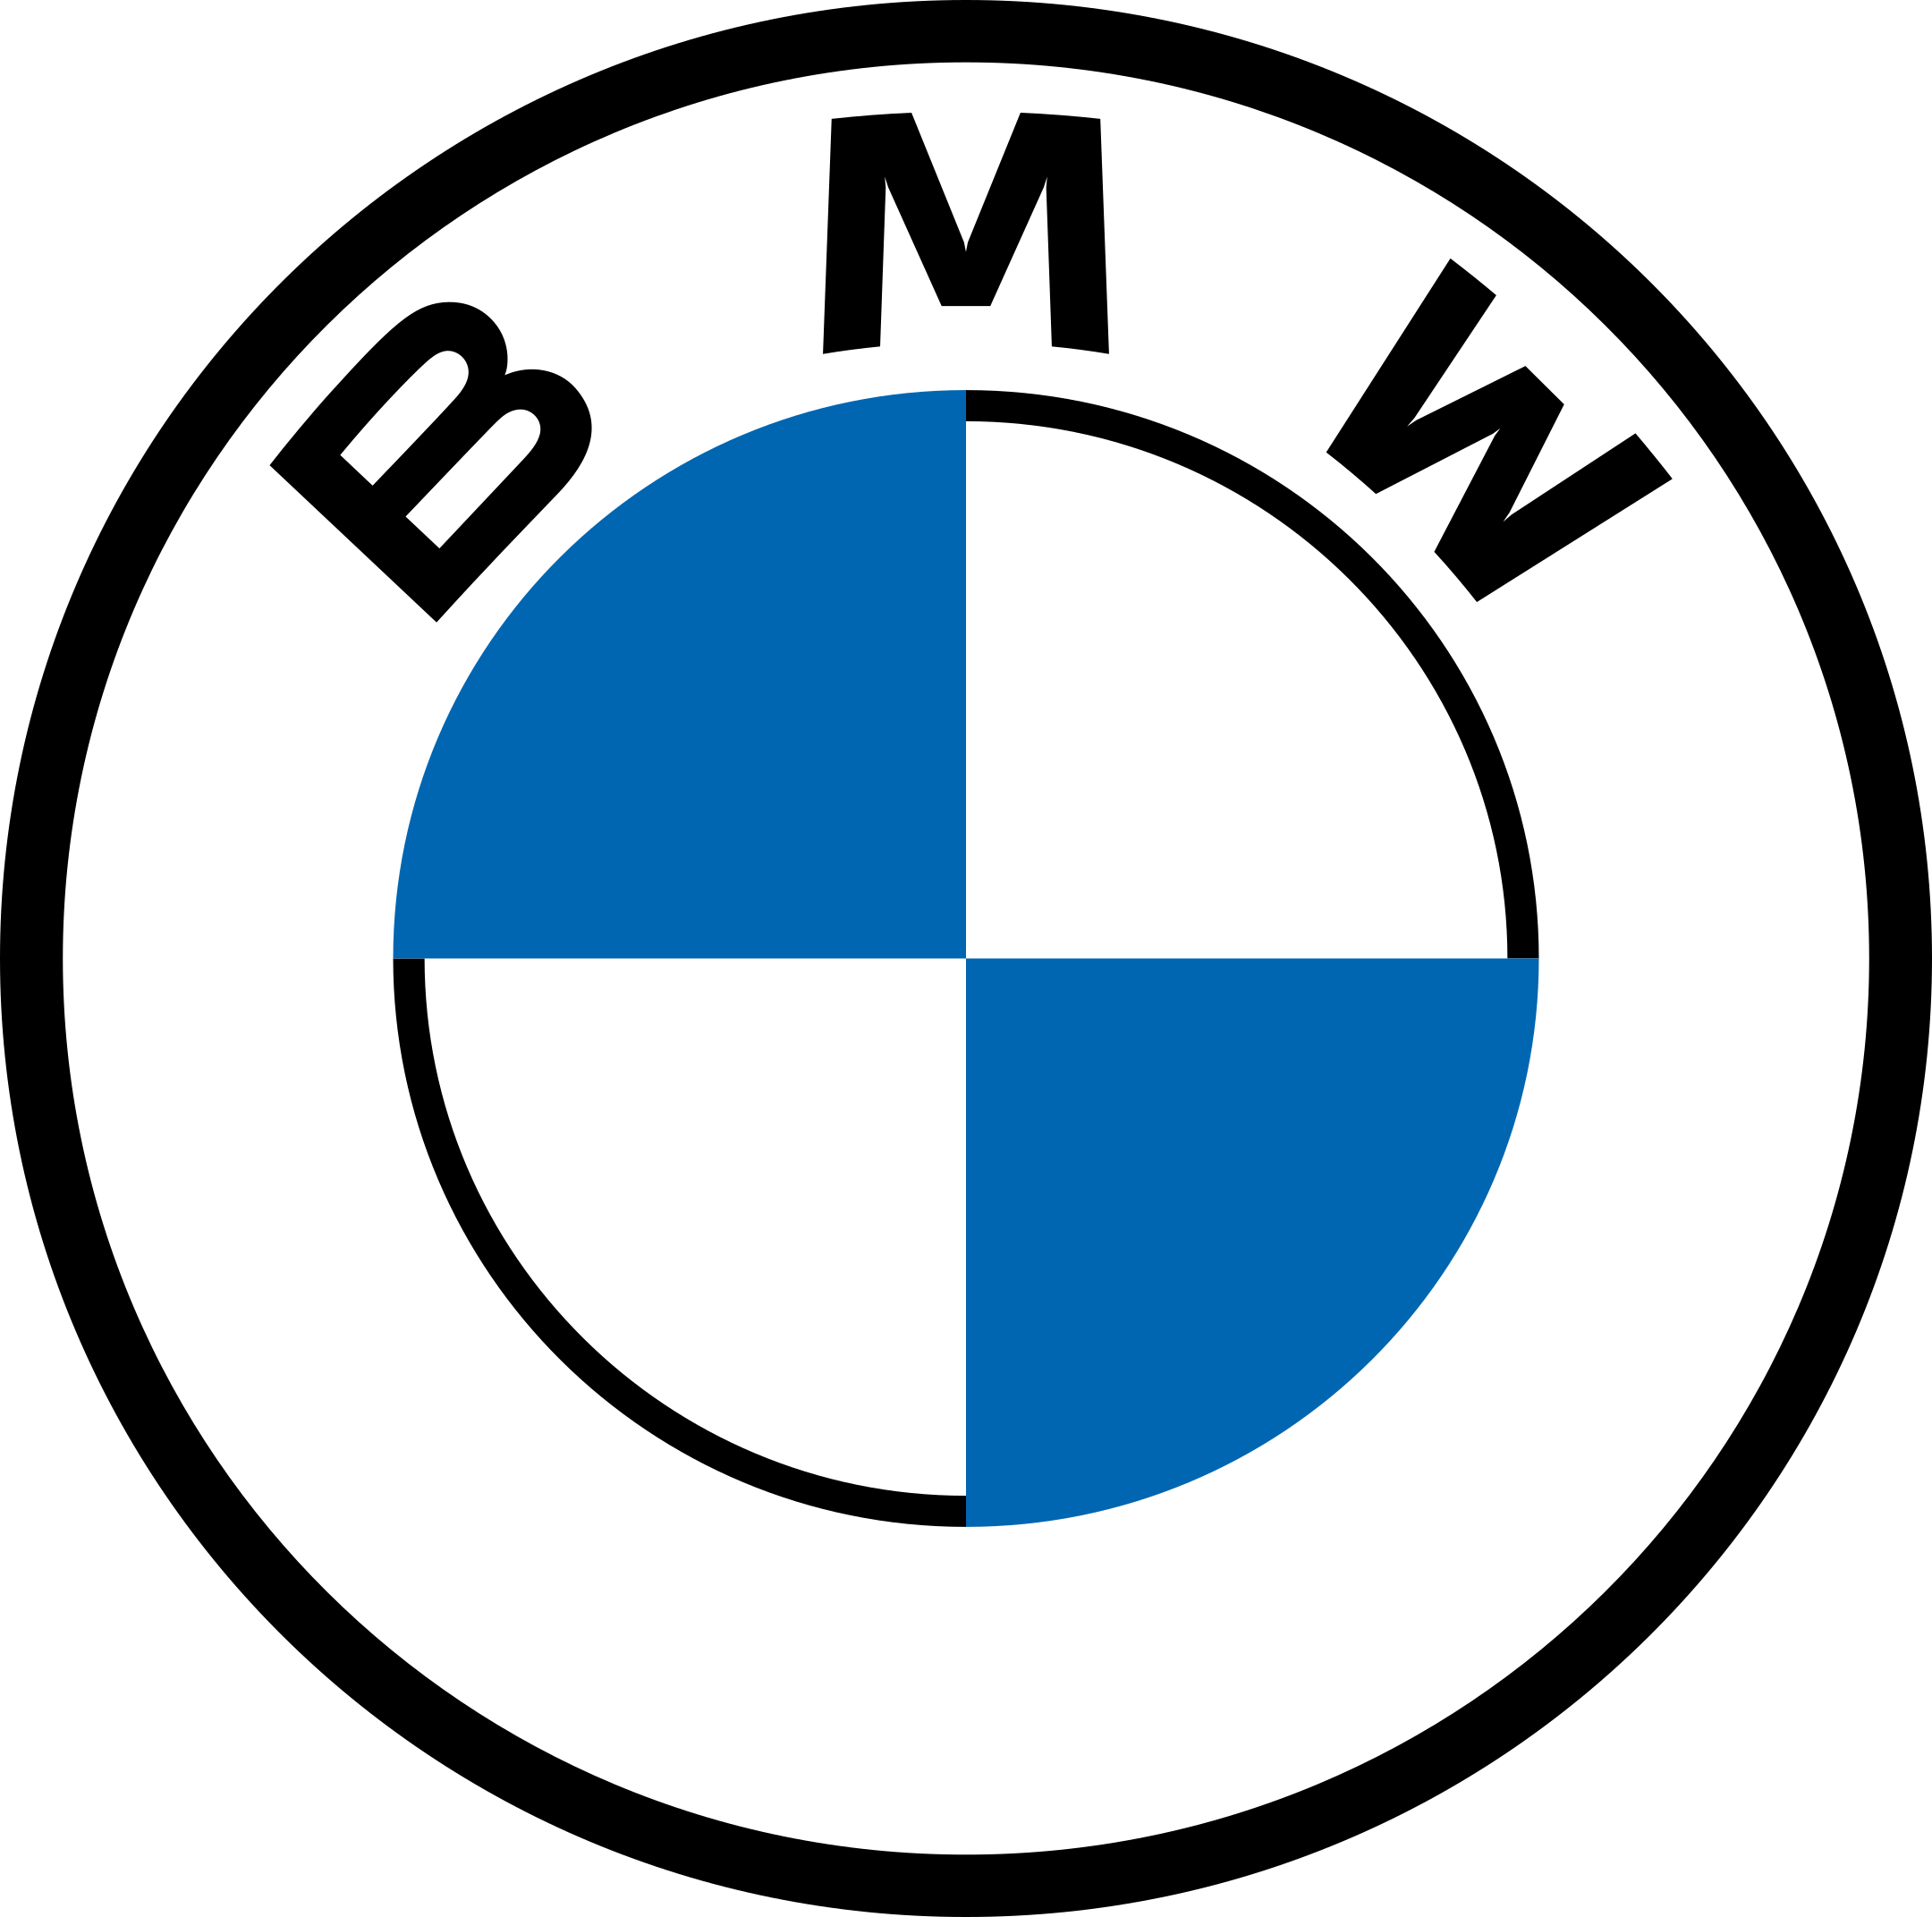 bmw logo 1 2 - BMW Logo